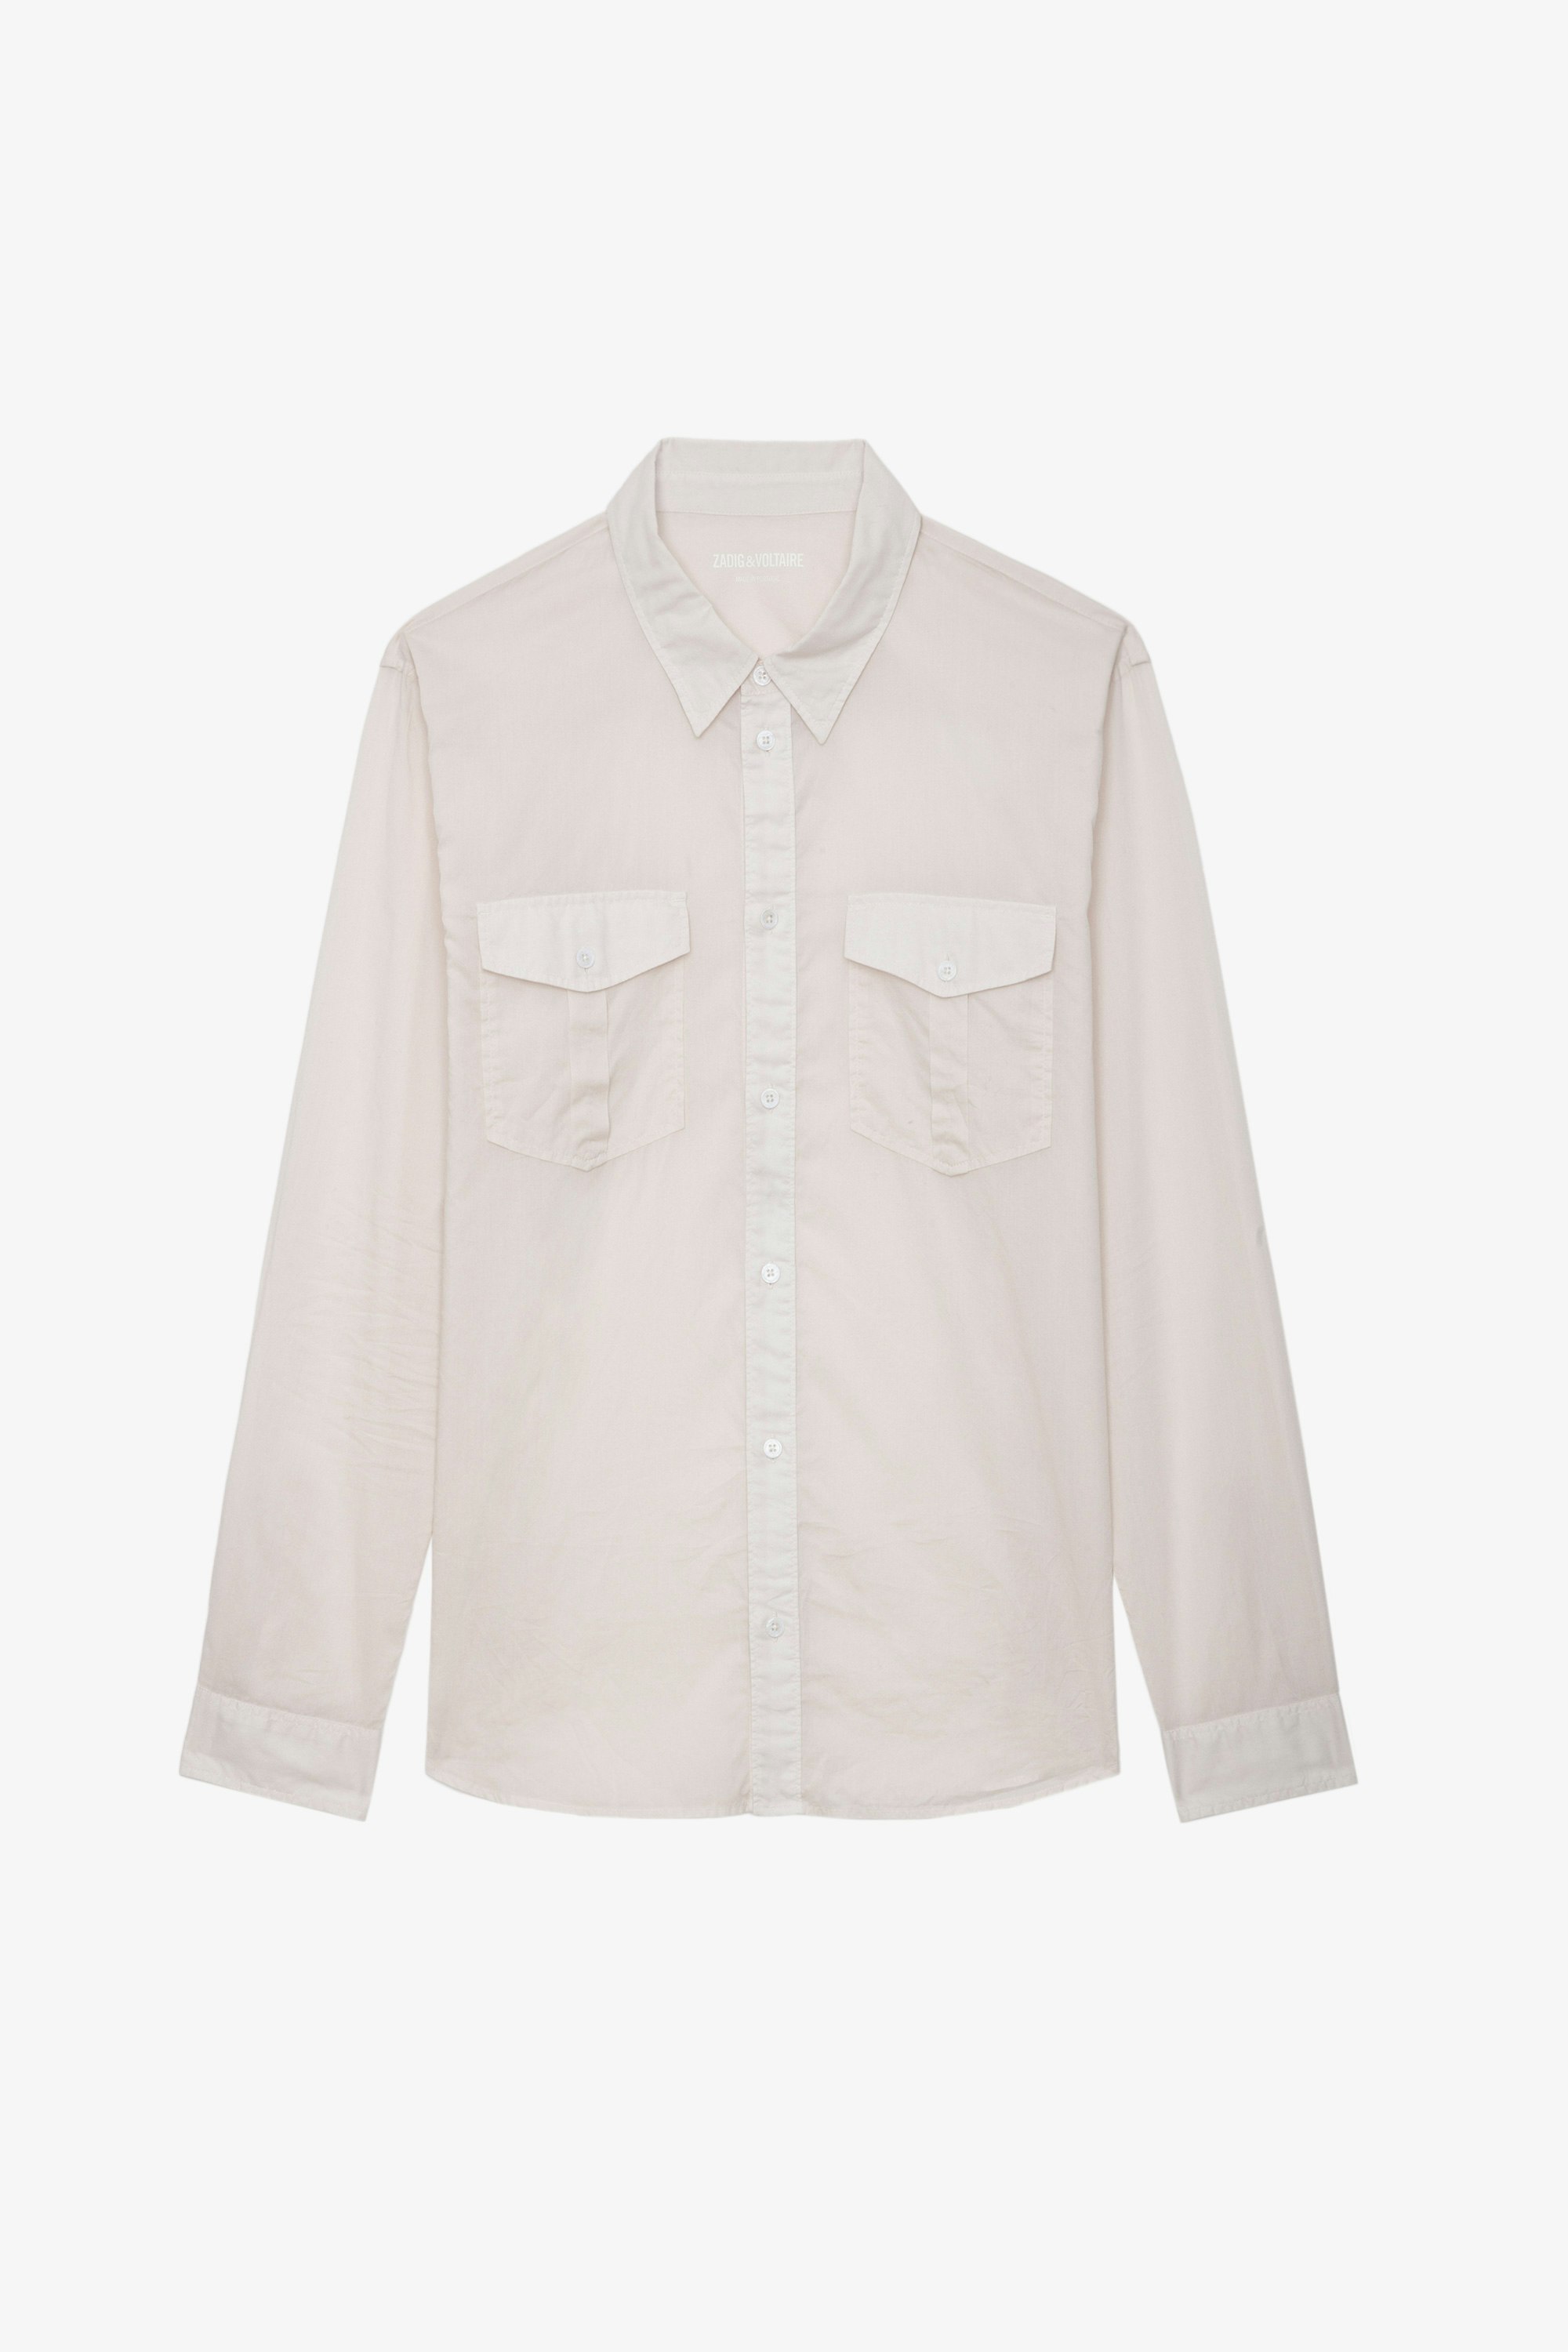 Camisa Thibault - Camisa de gasa de algodón en color rosa palo con mangas largas.